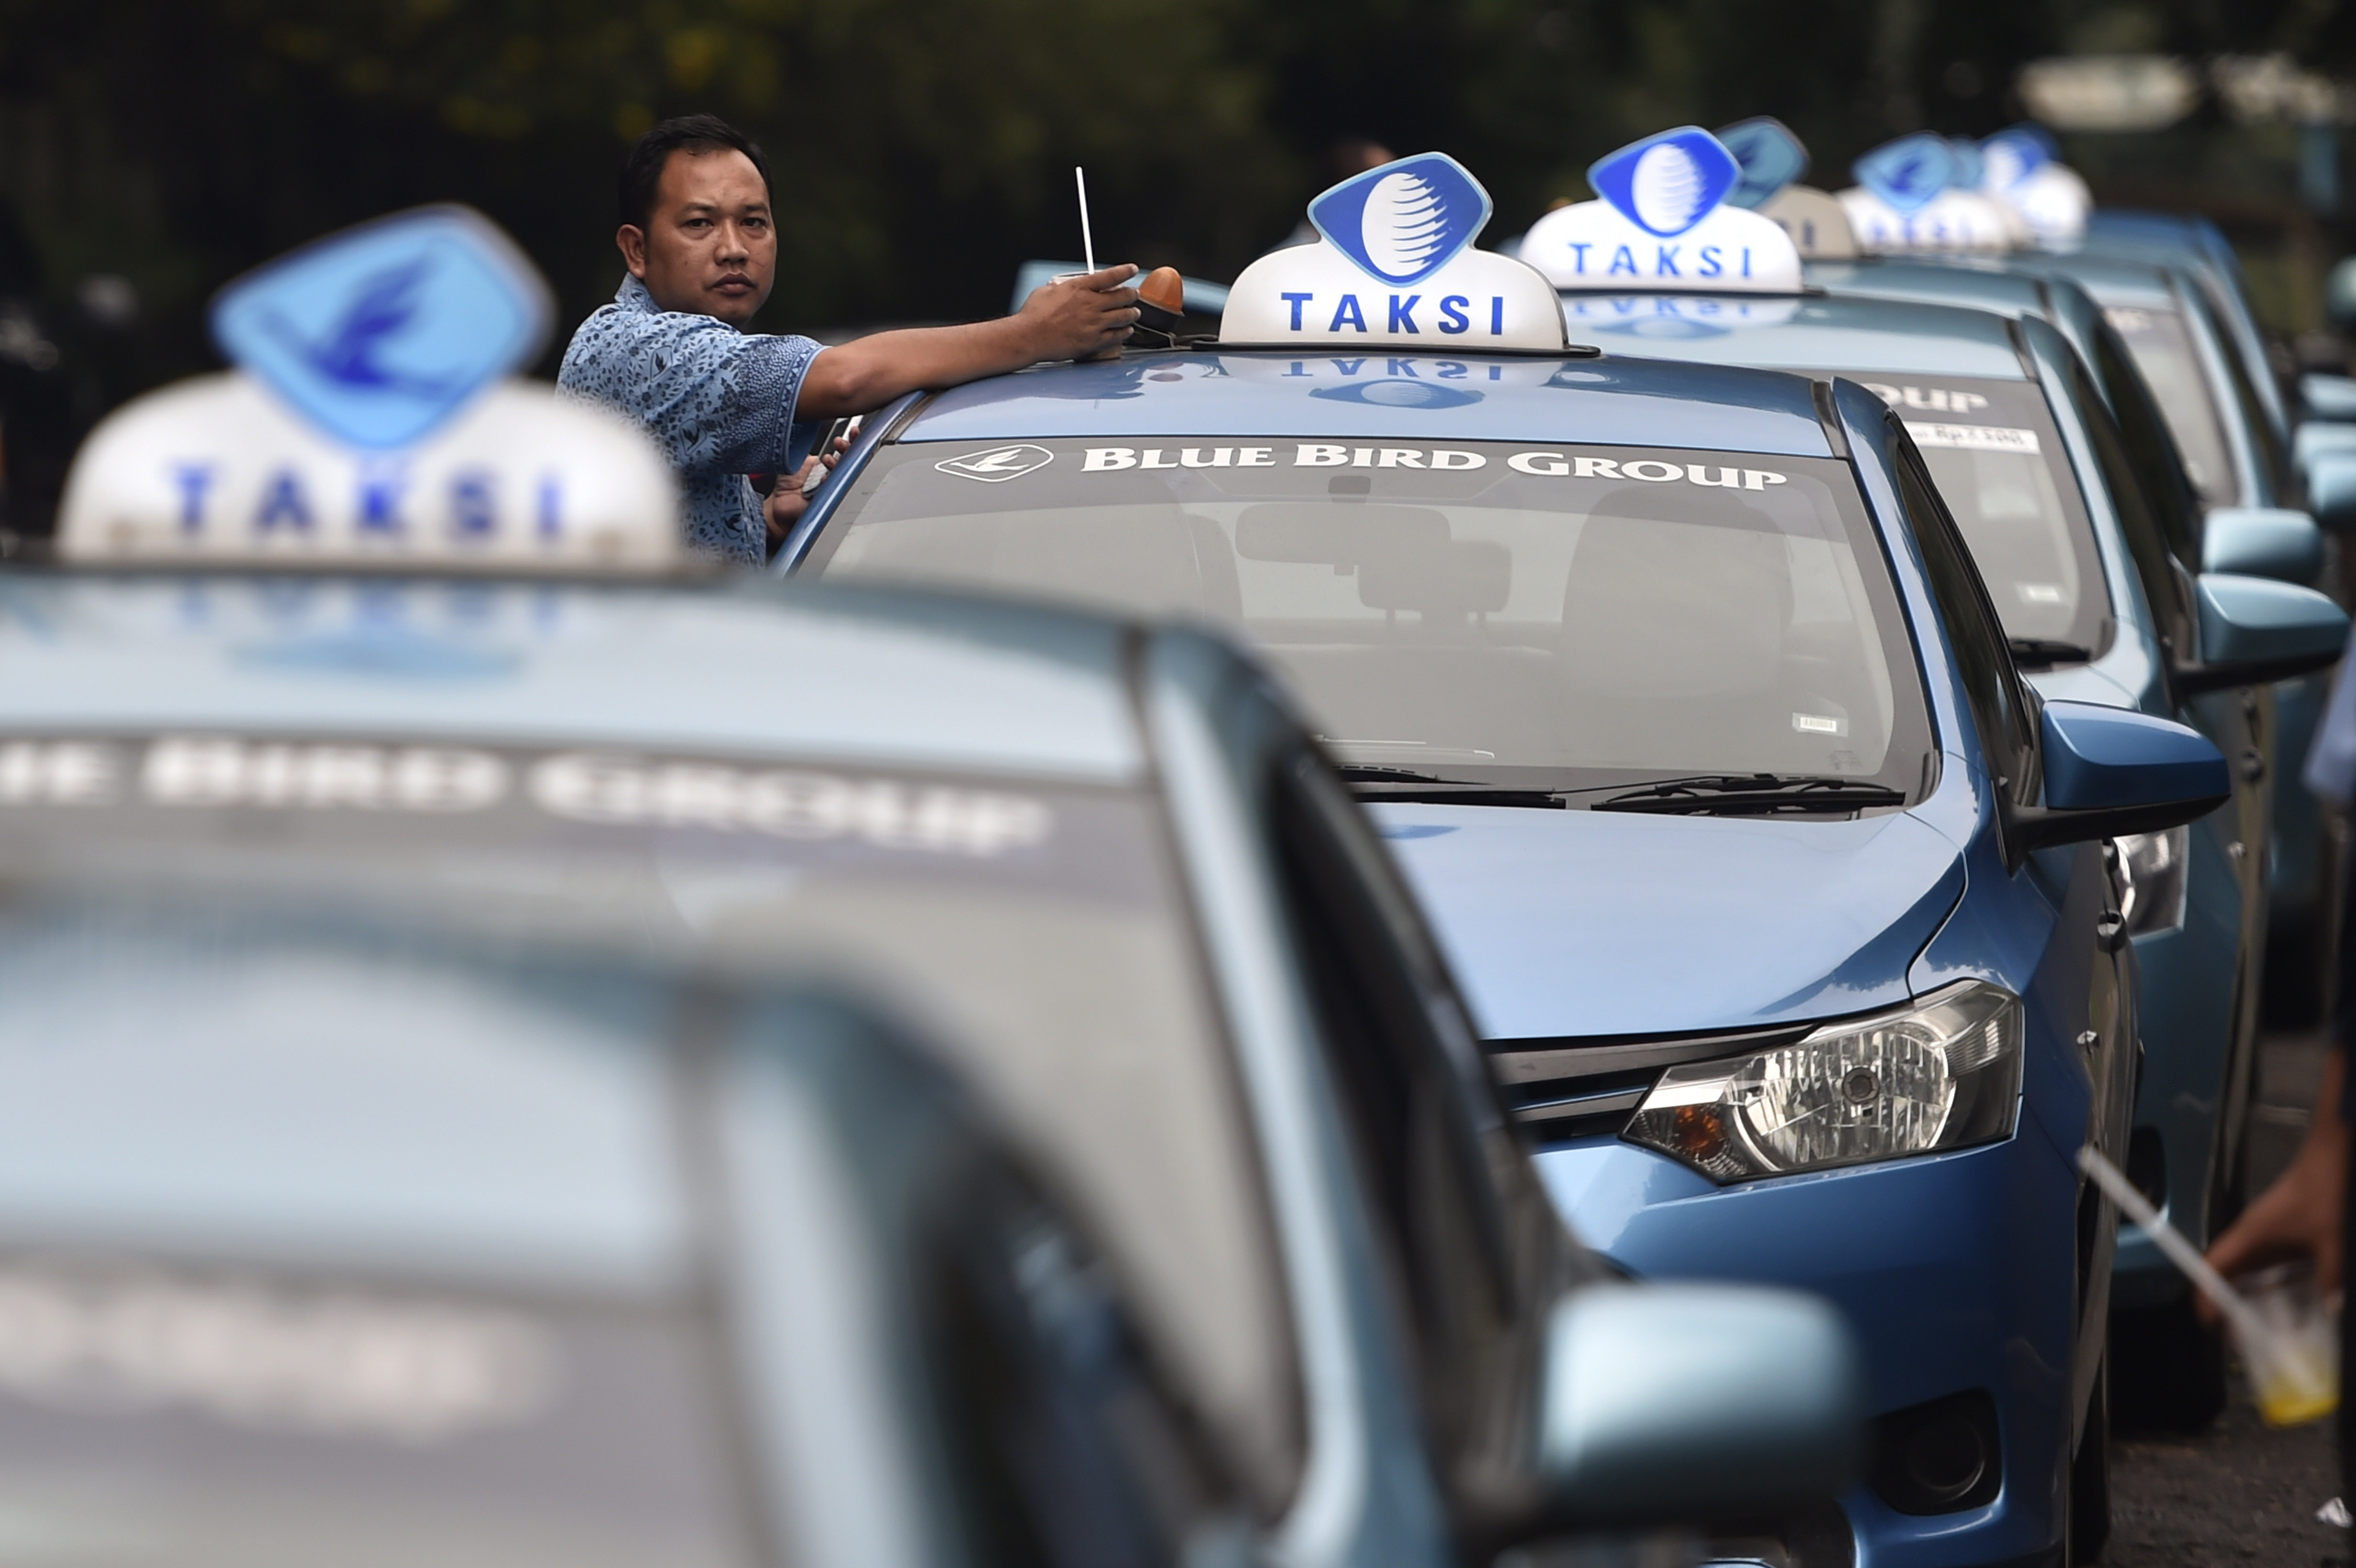 TAKSI GRATIS. Perusahaan taksi Blue Bird Group memberikan layanan gratis selama 24 jam pada Rabu, 23 Maret. Foto oleh Puspa Perwitasari/ANTARA 